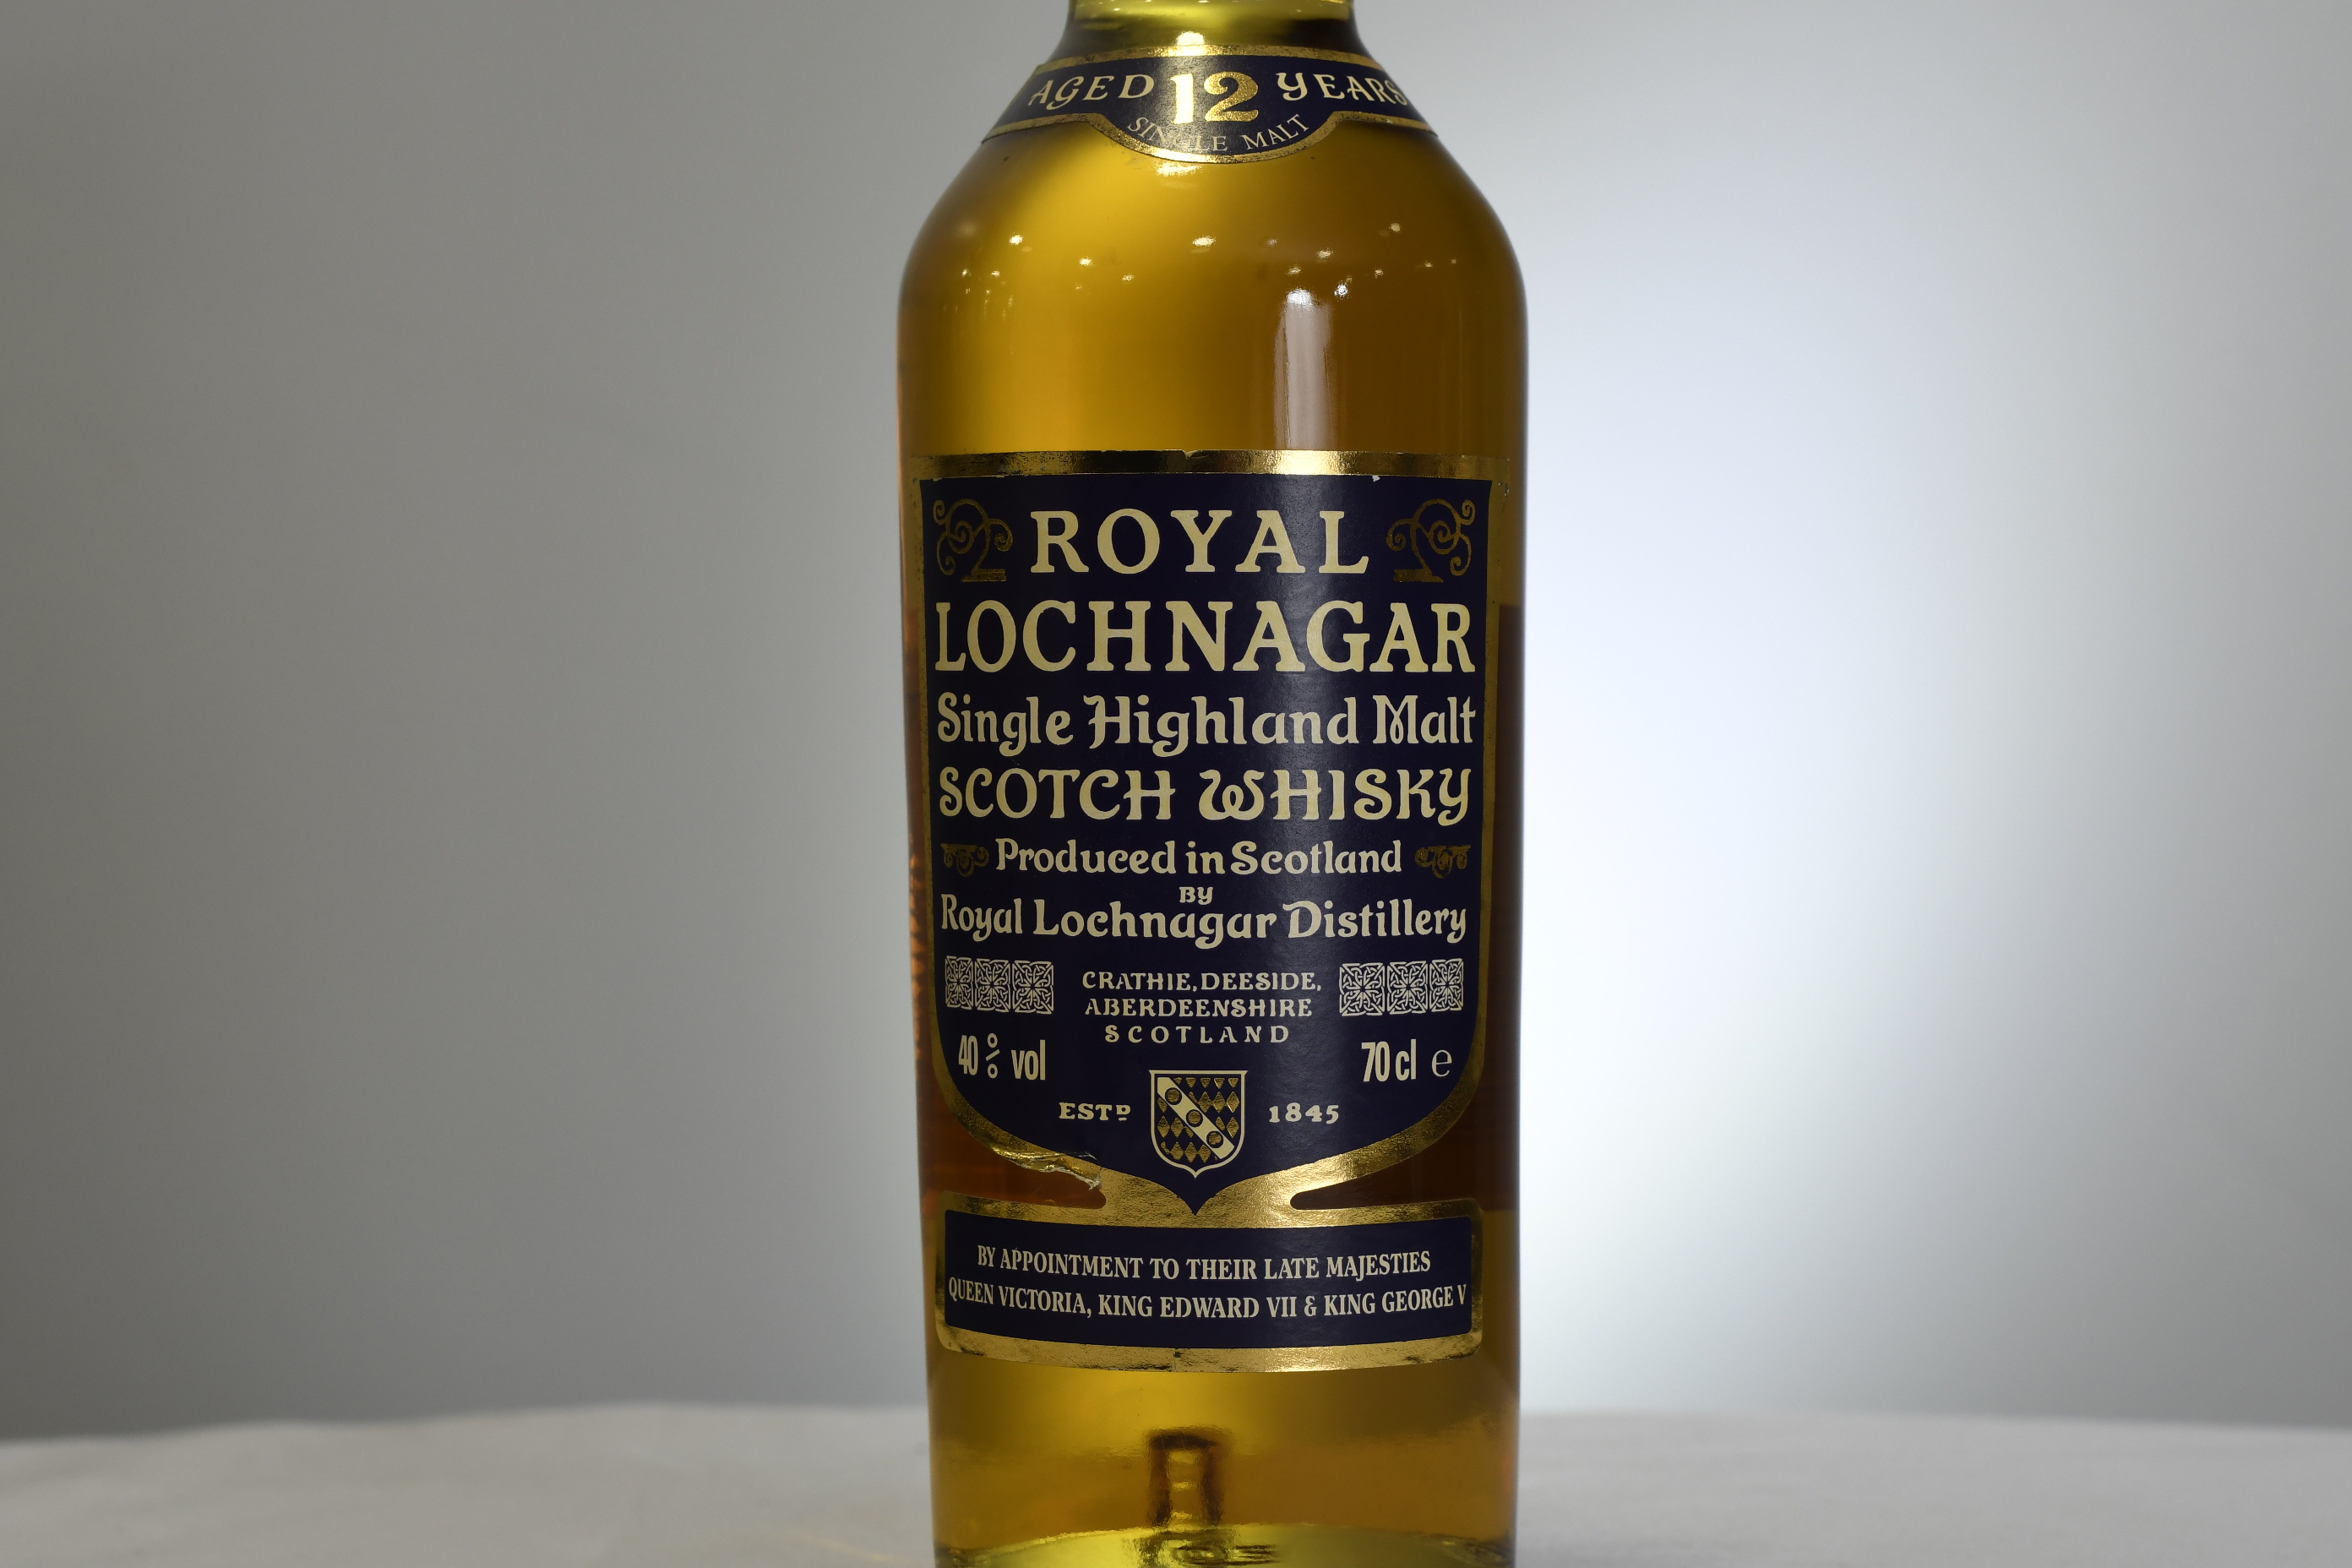 Royal Lochnigar 12 y.o. - Image 2 of 2